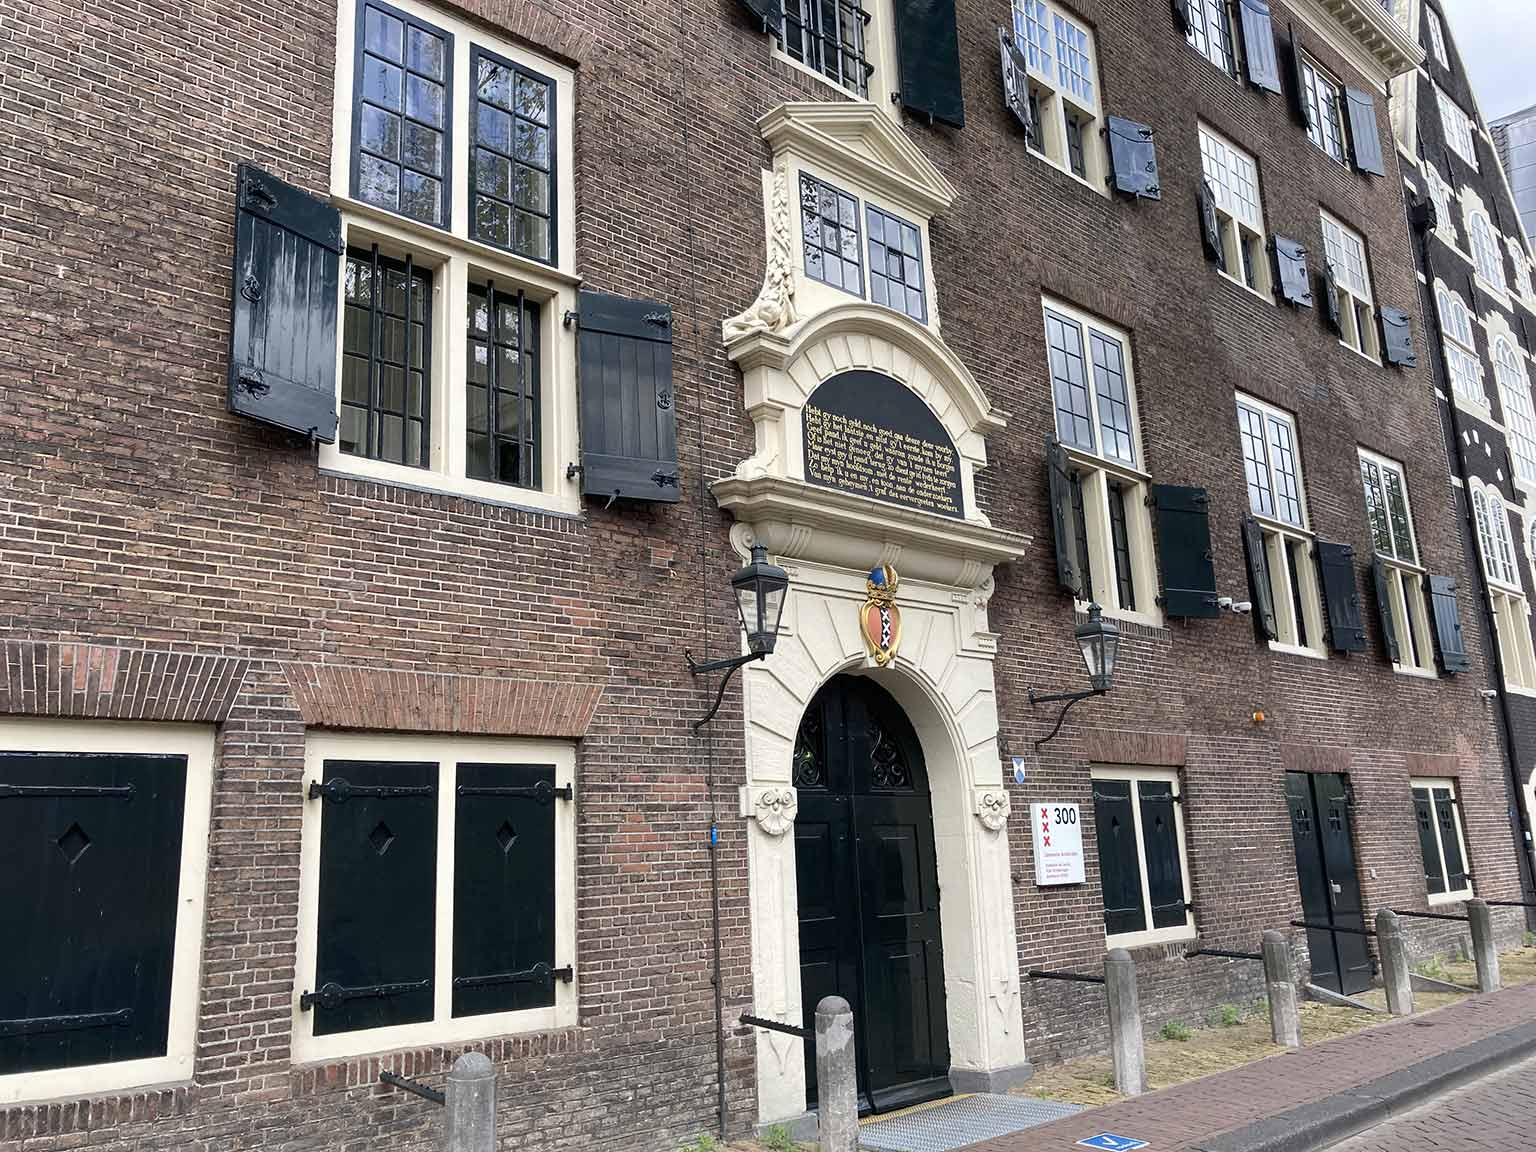 Stadsbank van Lening (City Pawn Bank) from 1614 at Oudezijds Voorburgwal 300, Amsterdam